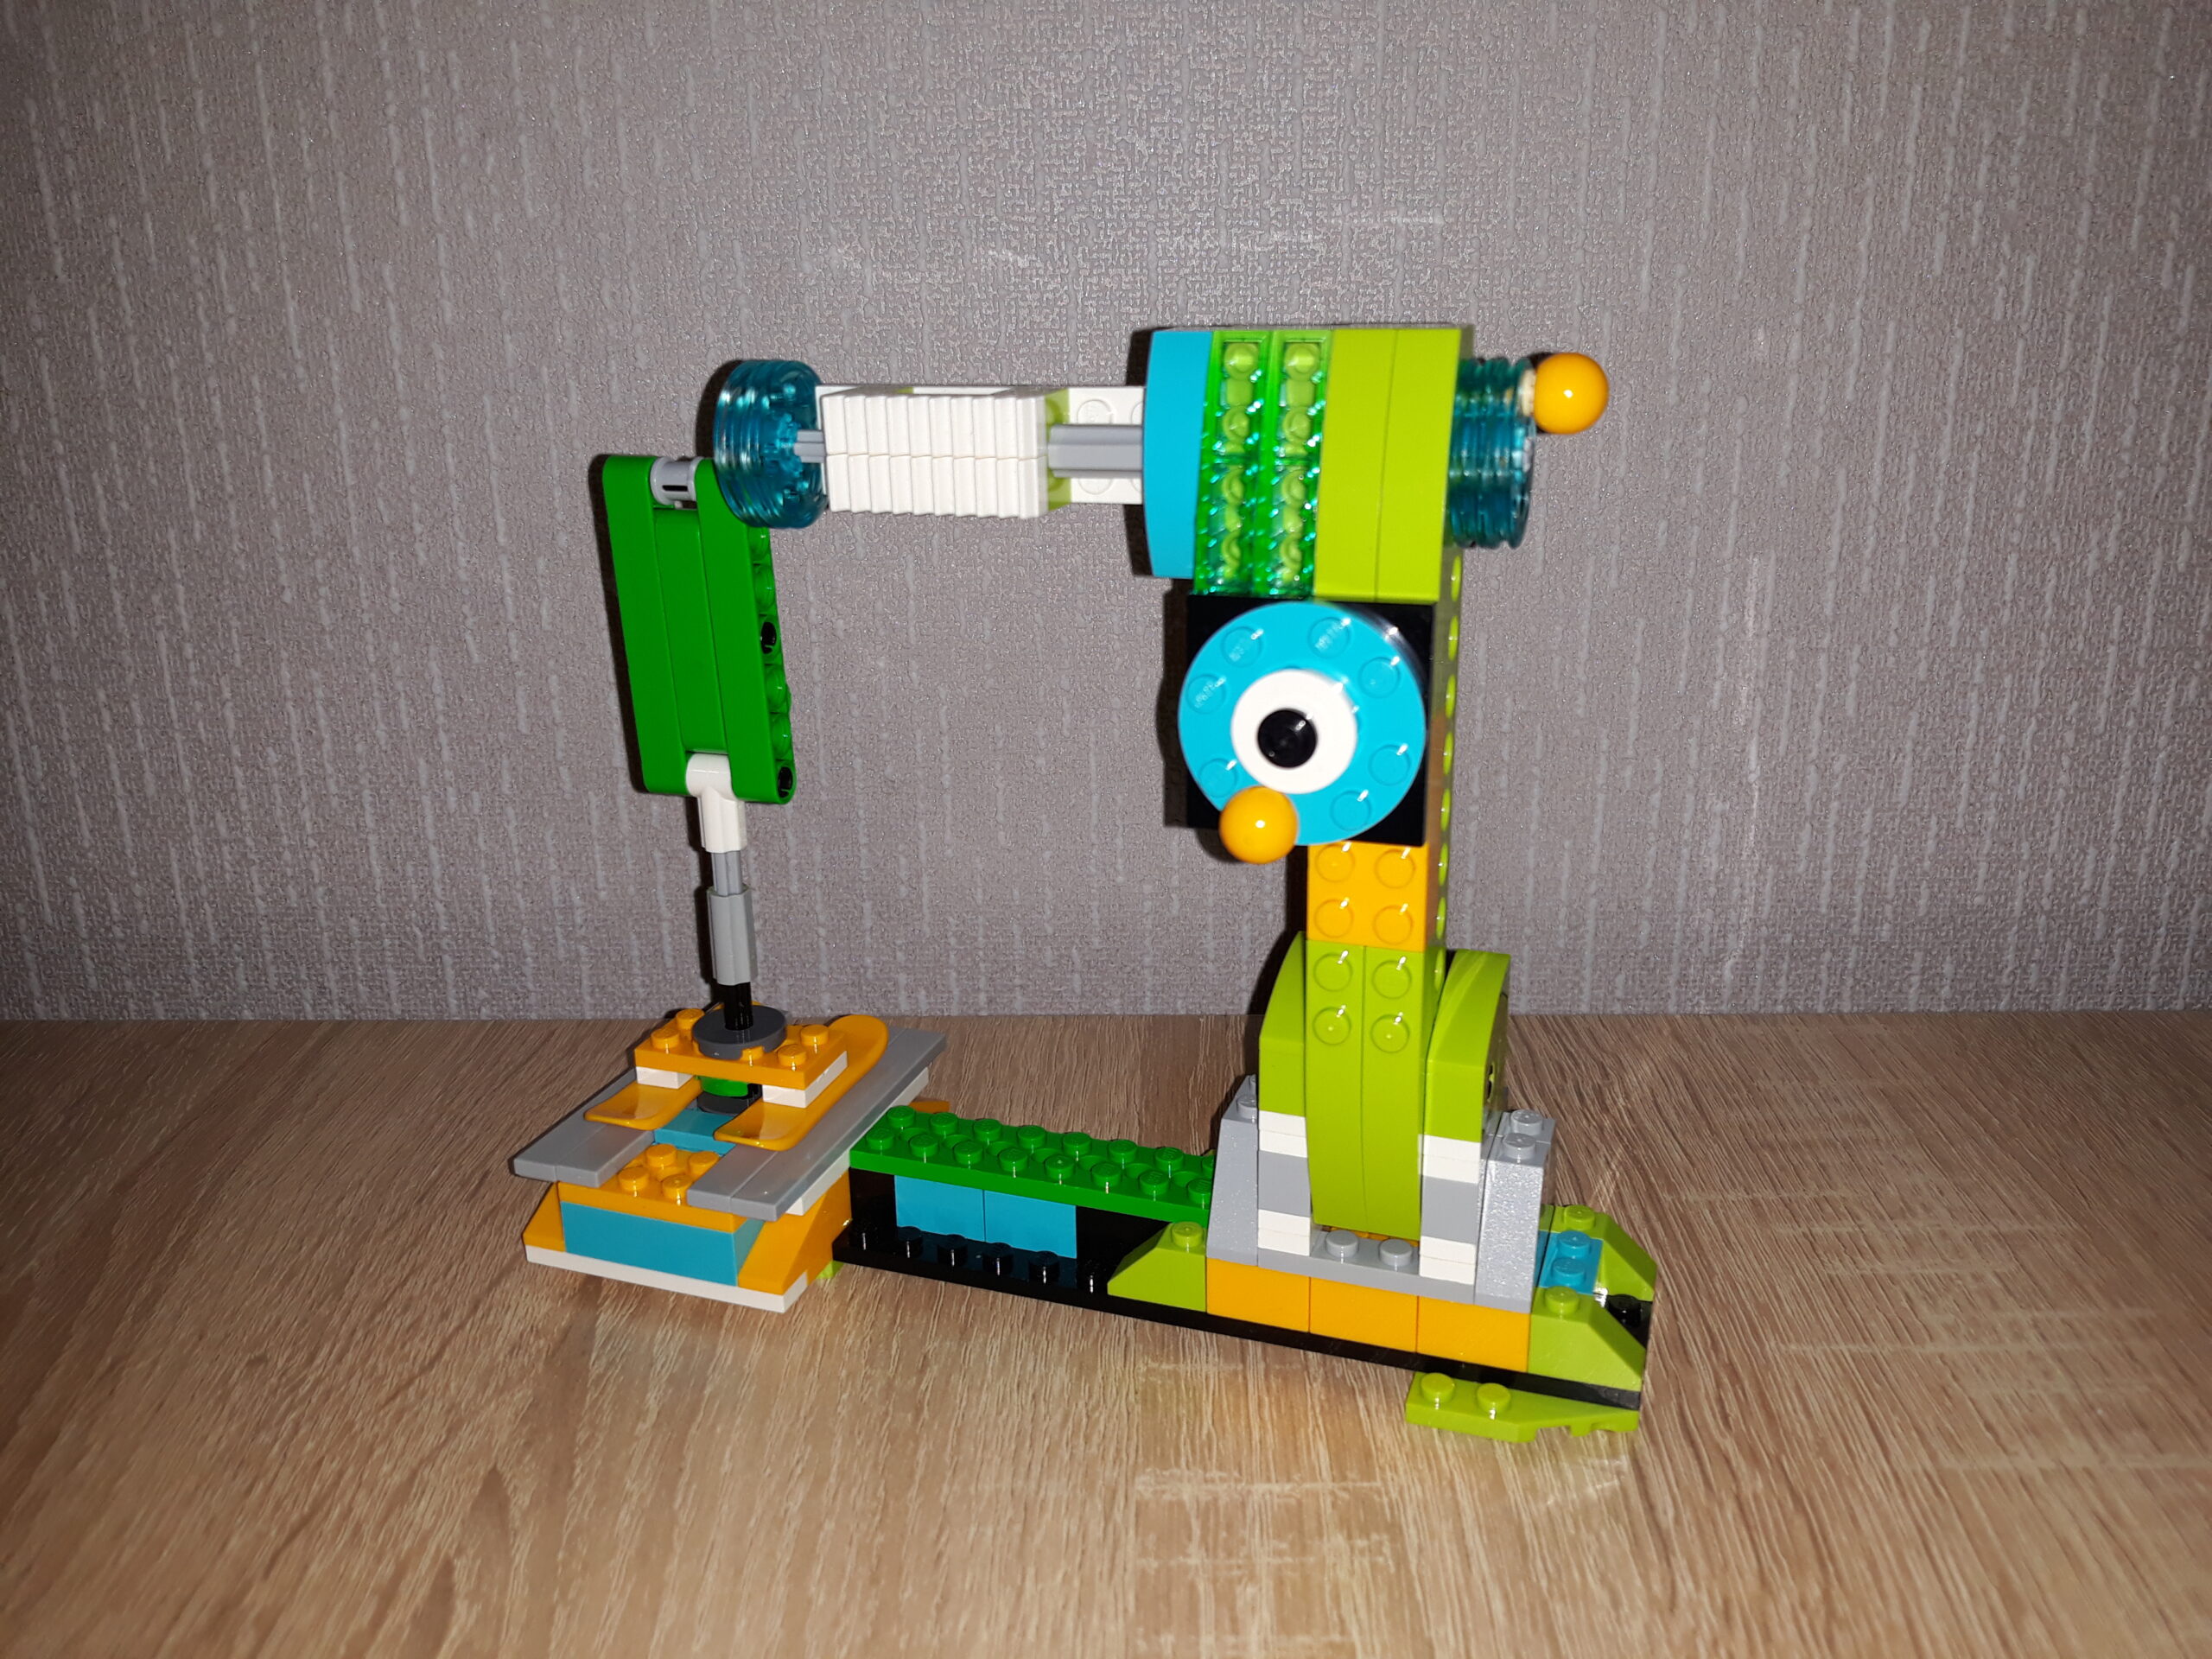 Инструкция по сборке из набора LEGO Education WeDo 2.0 Швейная машинка 2